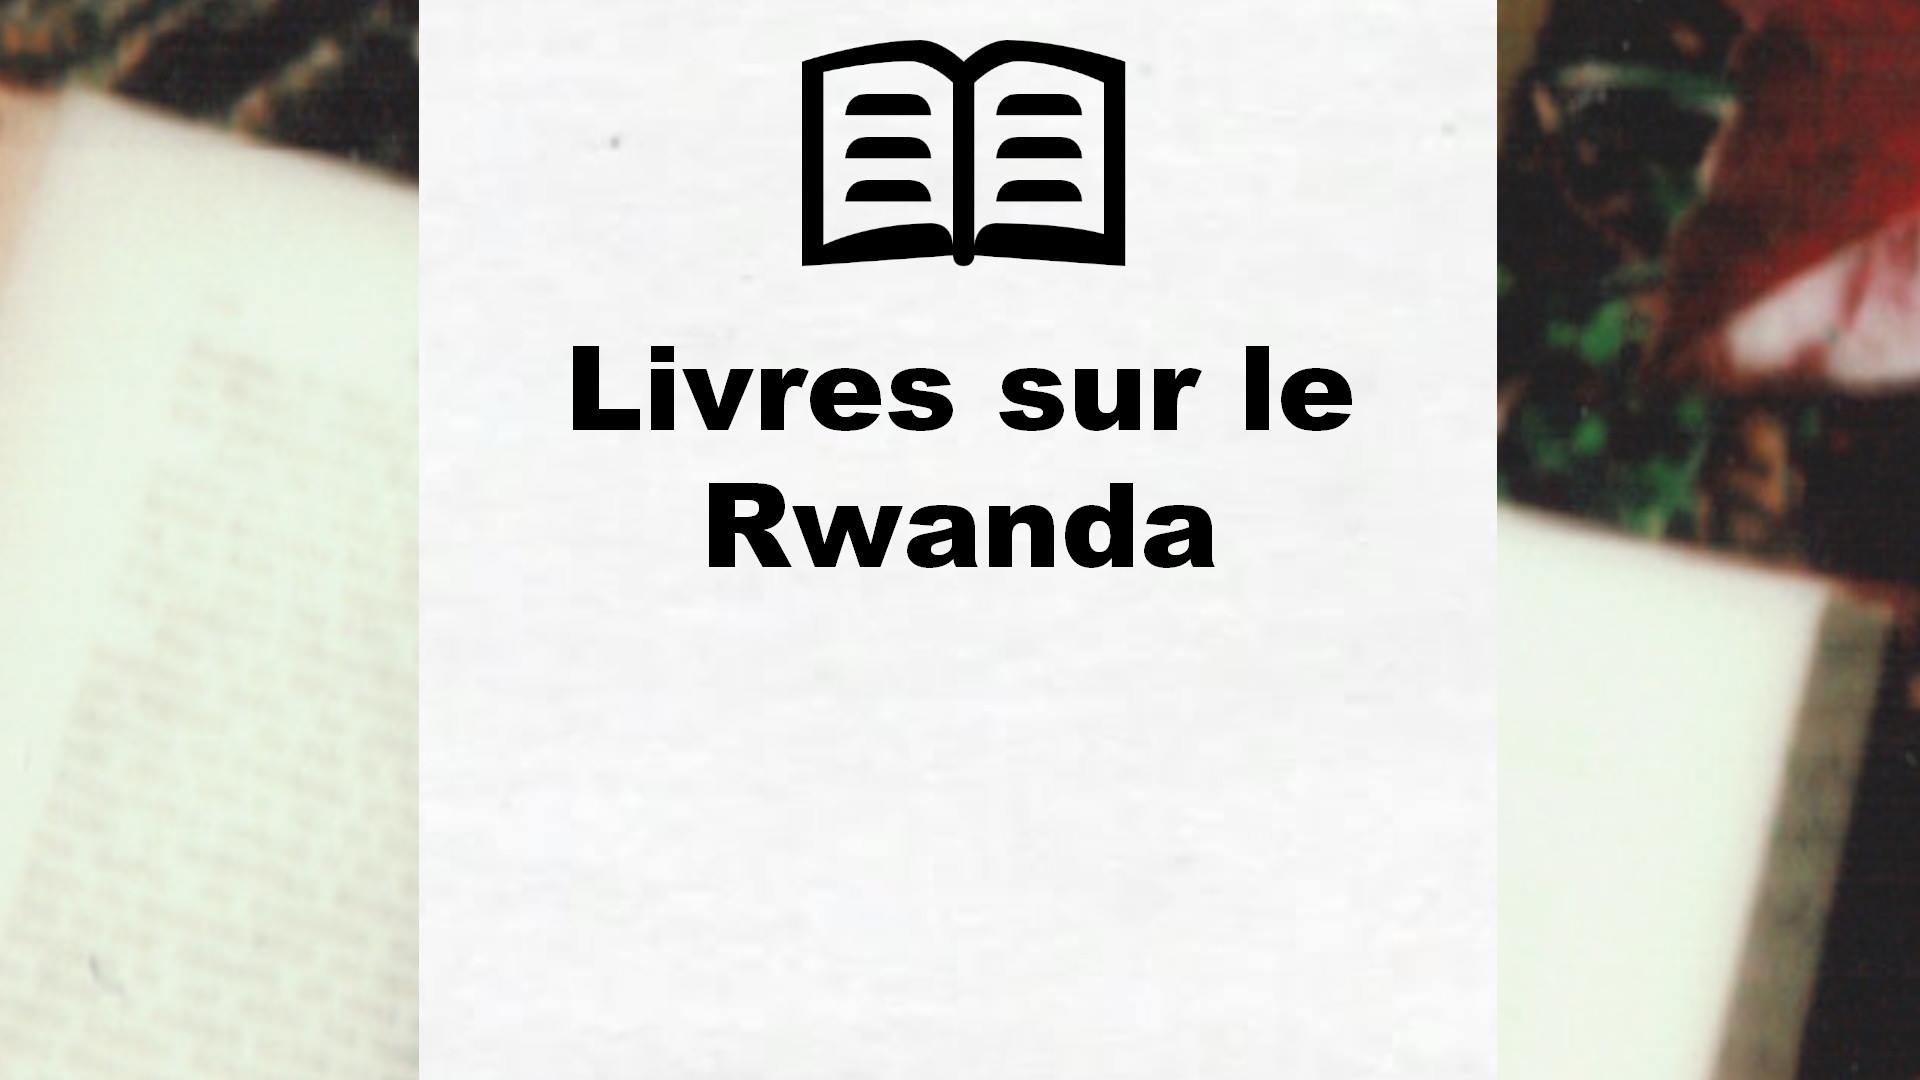 Livres sur le Rwanda